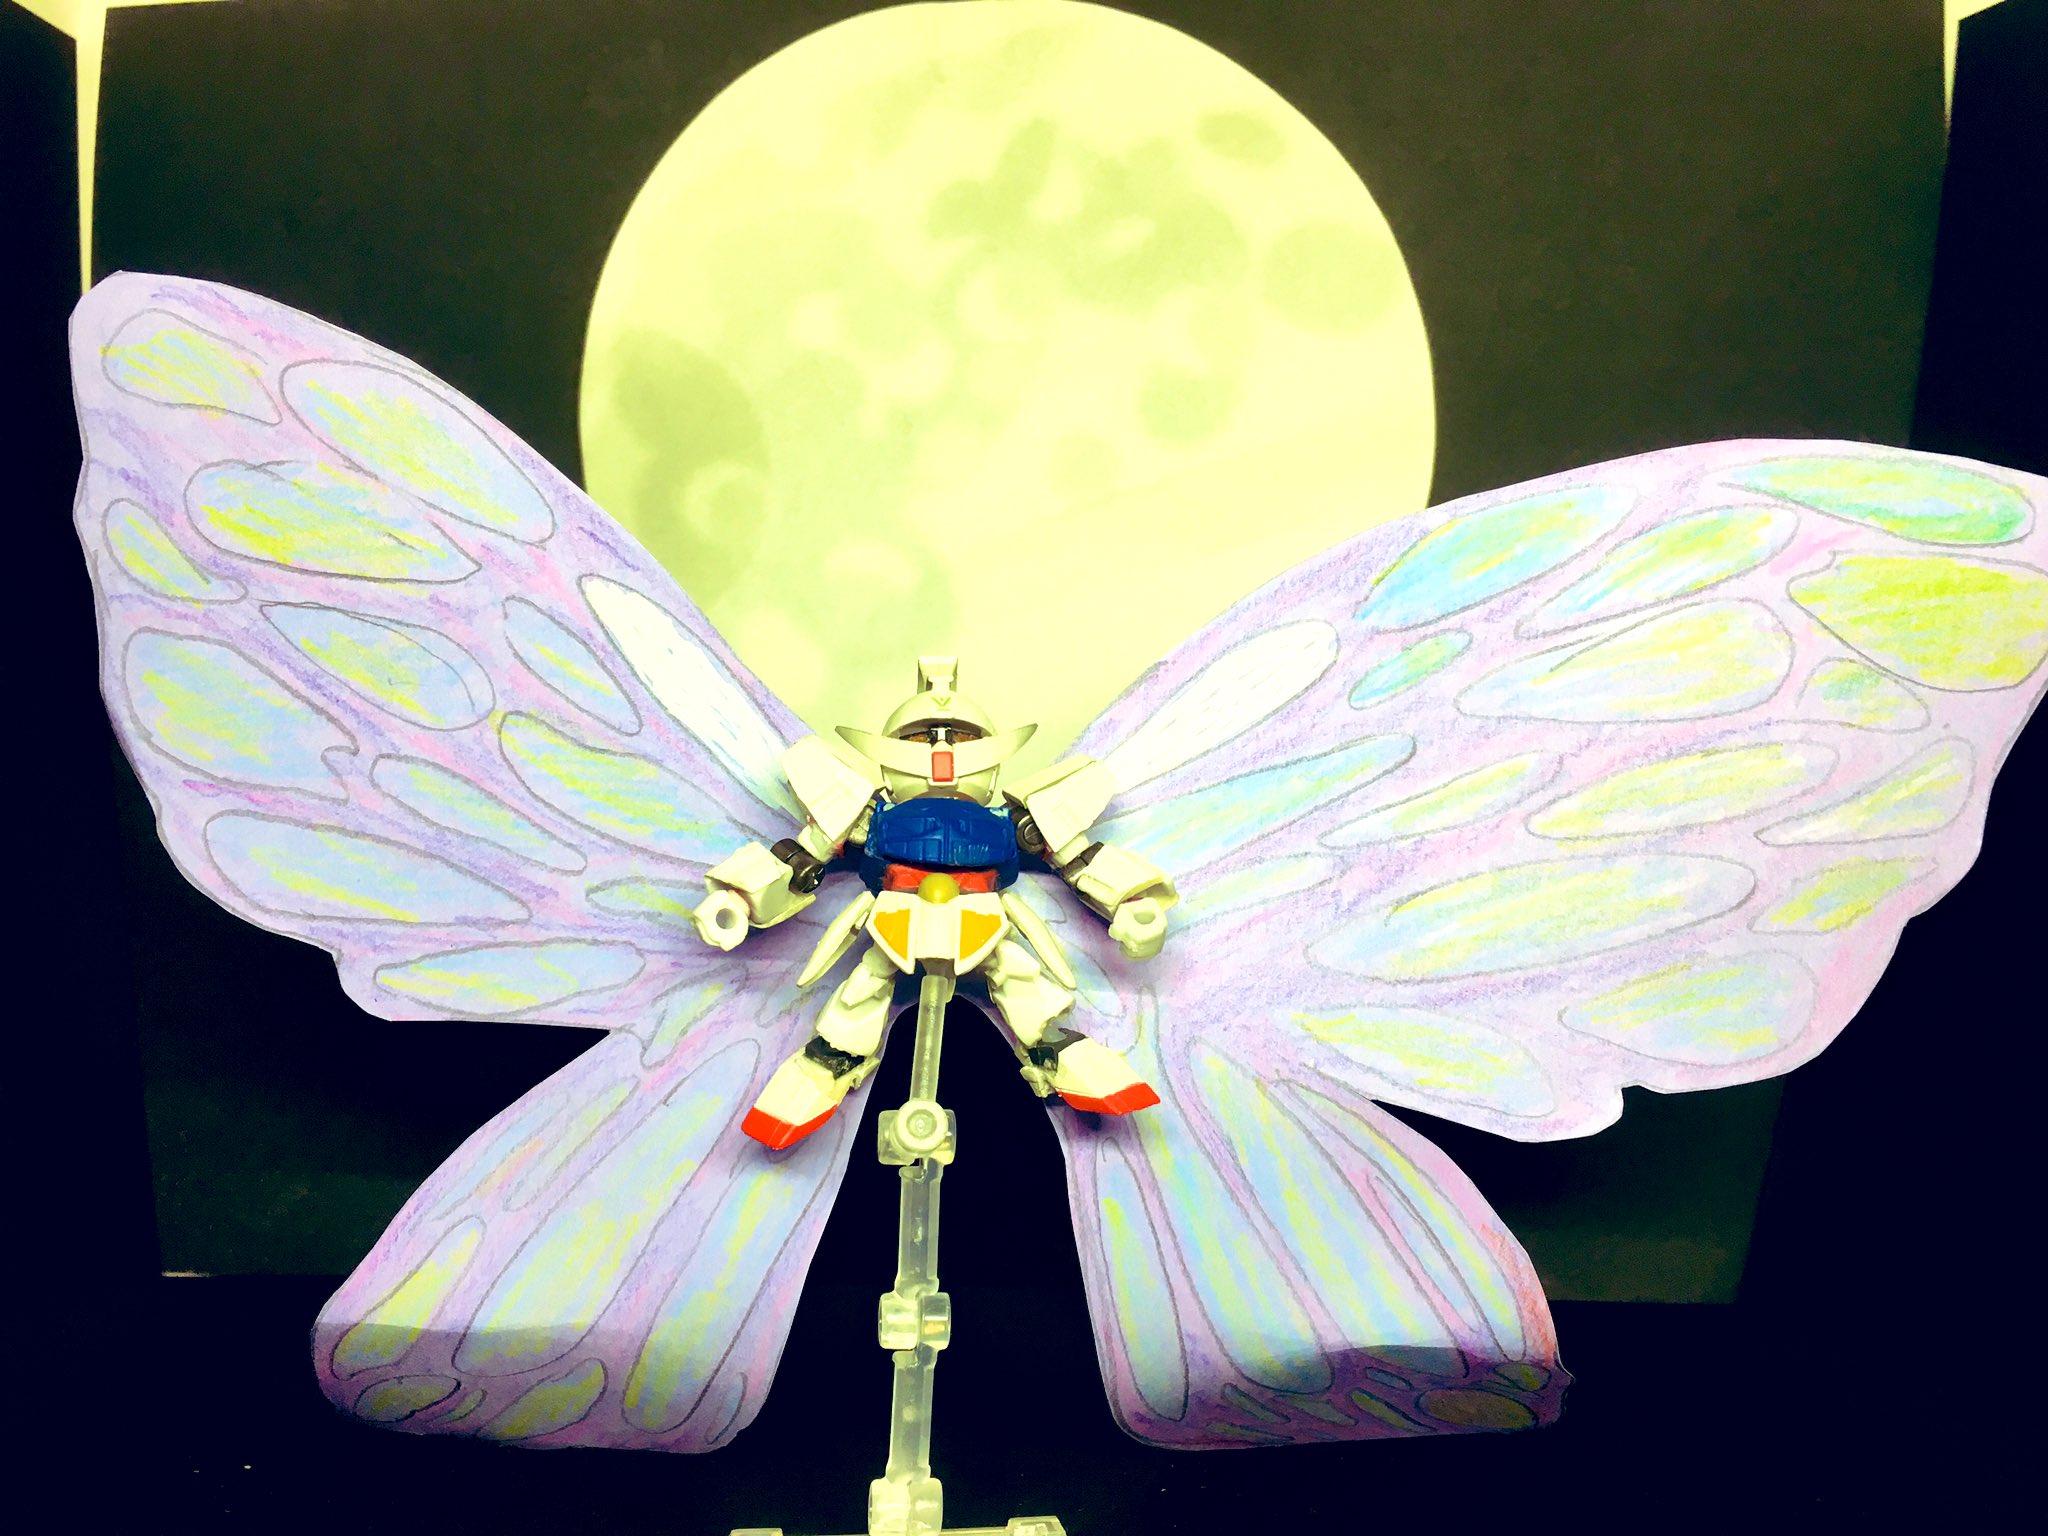 ガシャポンnerd V Twitter 月光蝶である ターンエーガンダムは本当に偏見を捨てて見る価値のある作品だと思います ターンエーガンダム周年 ガシャポン戦士f